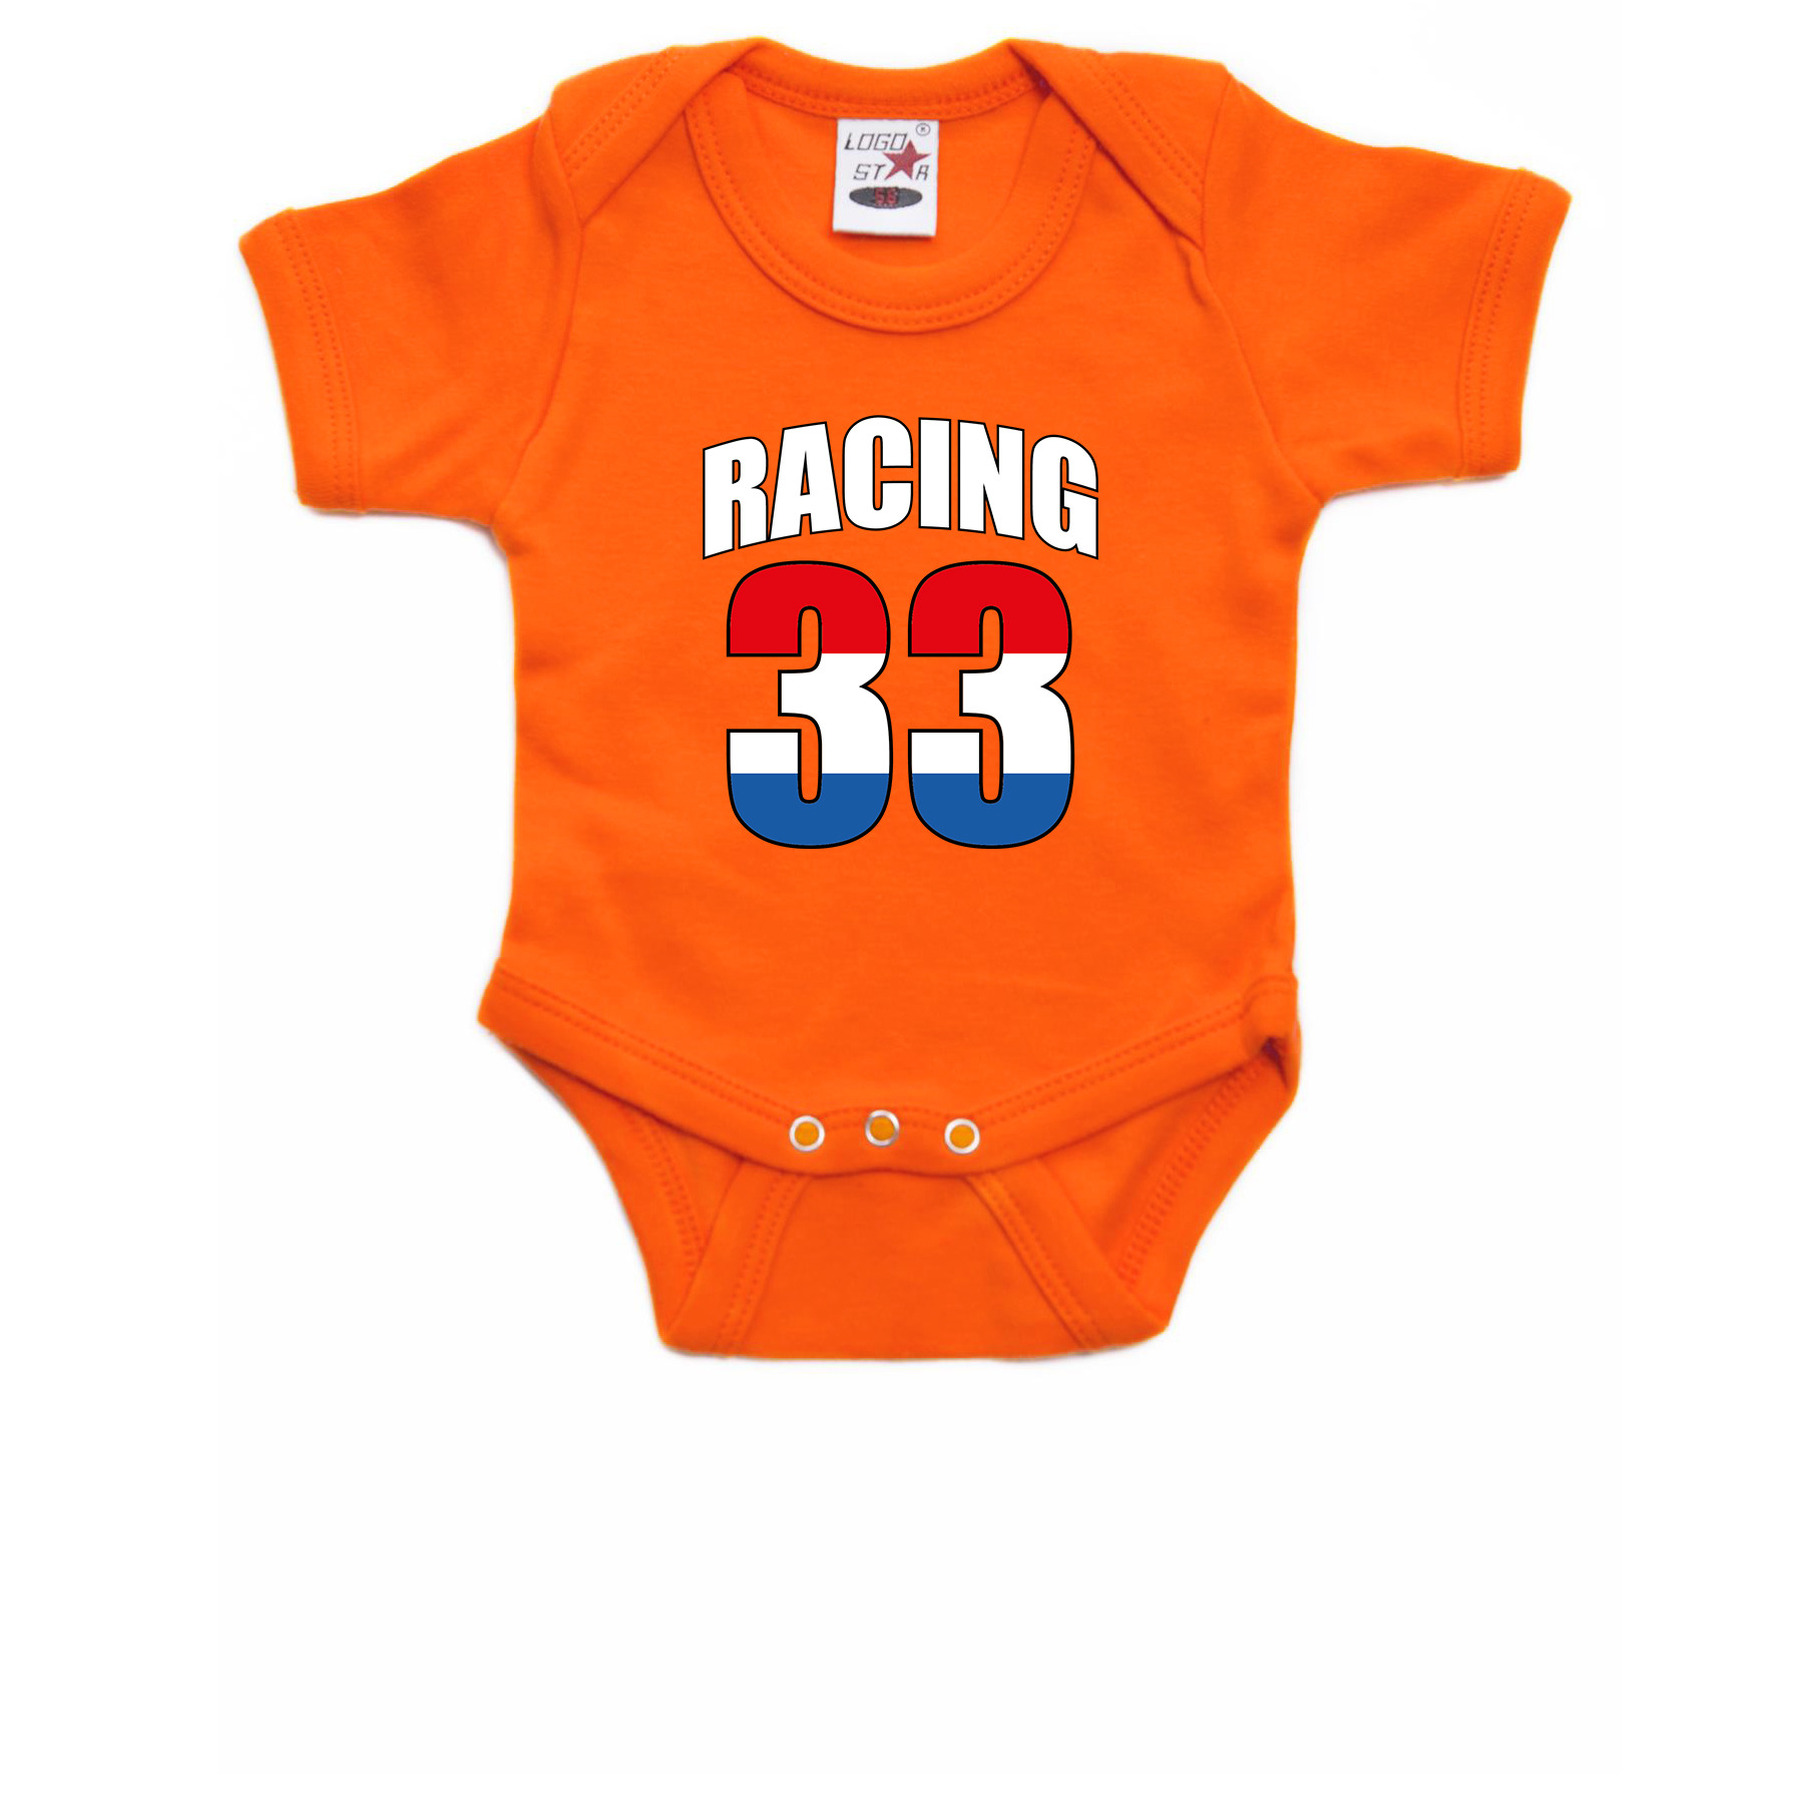 Oranje baby romper racing 33 met race auto coureur supporter-race supporter voor babys